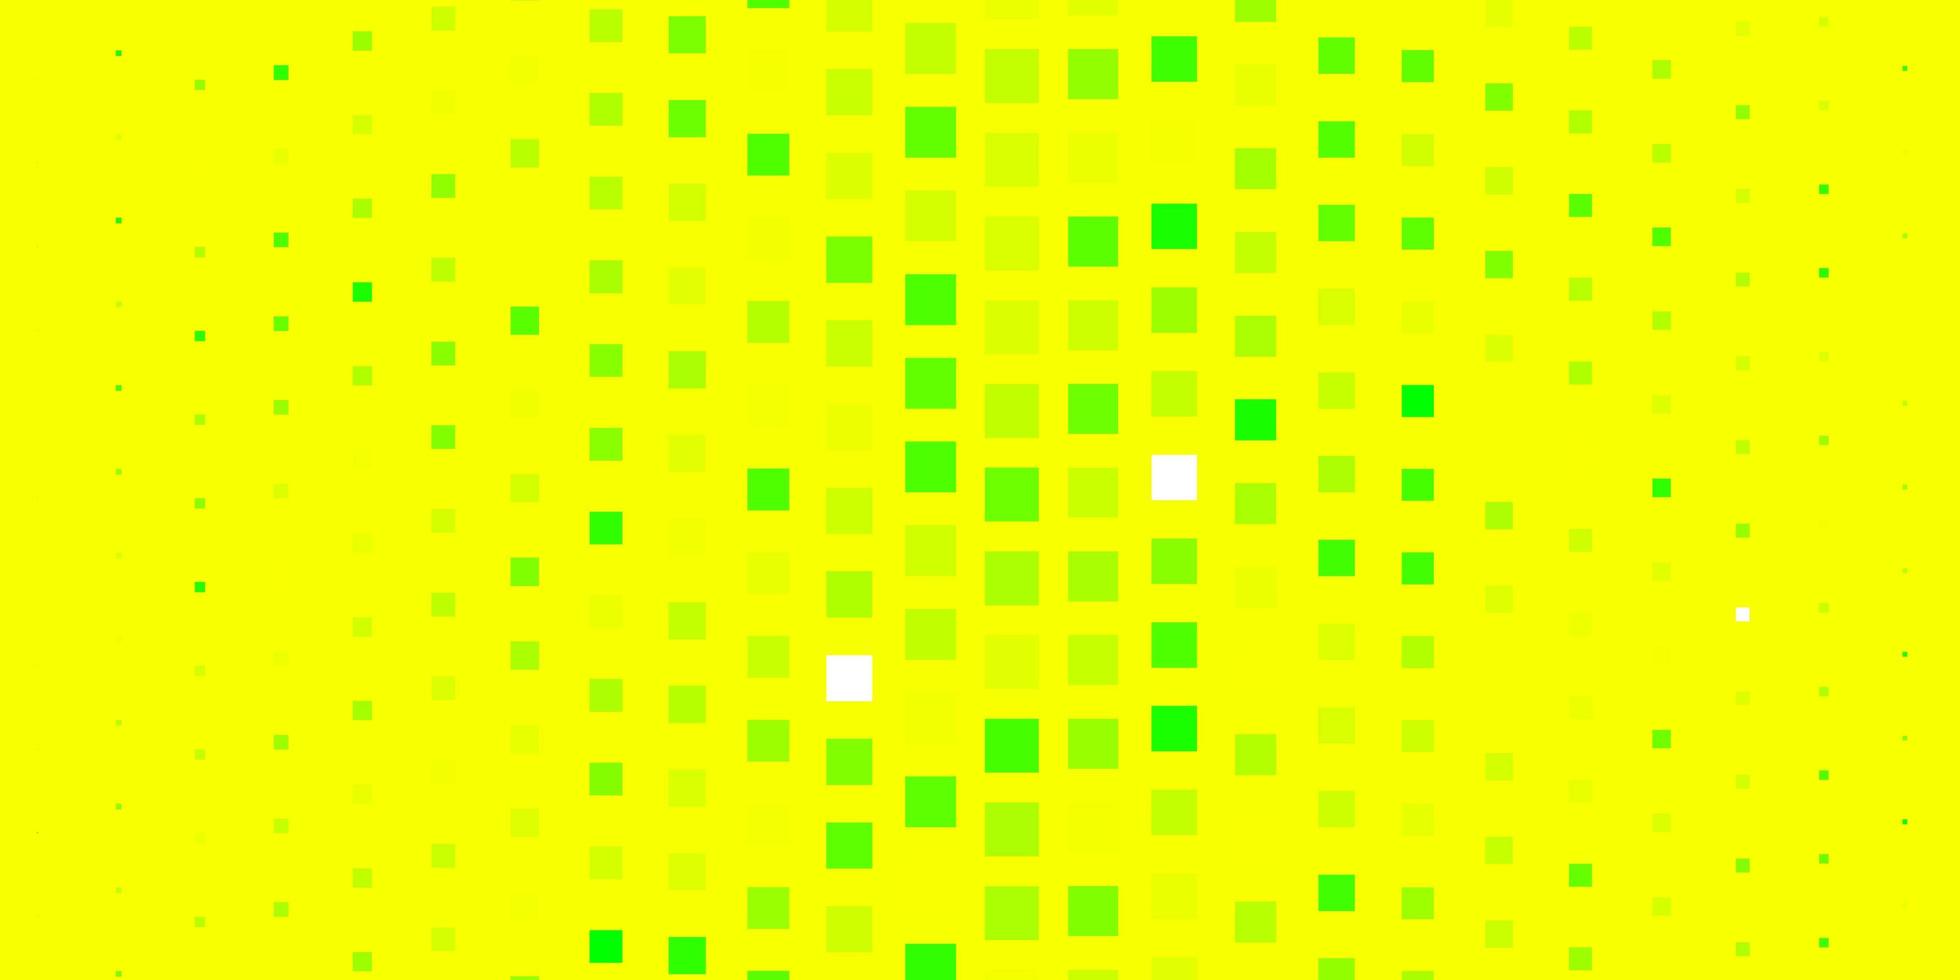 diseño de vector verde oscuro, amarillo con líneas, rectángulos. Ilustración colorida con rectángulos y cuadrados degradados. patrón para comerciales, anuncios.